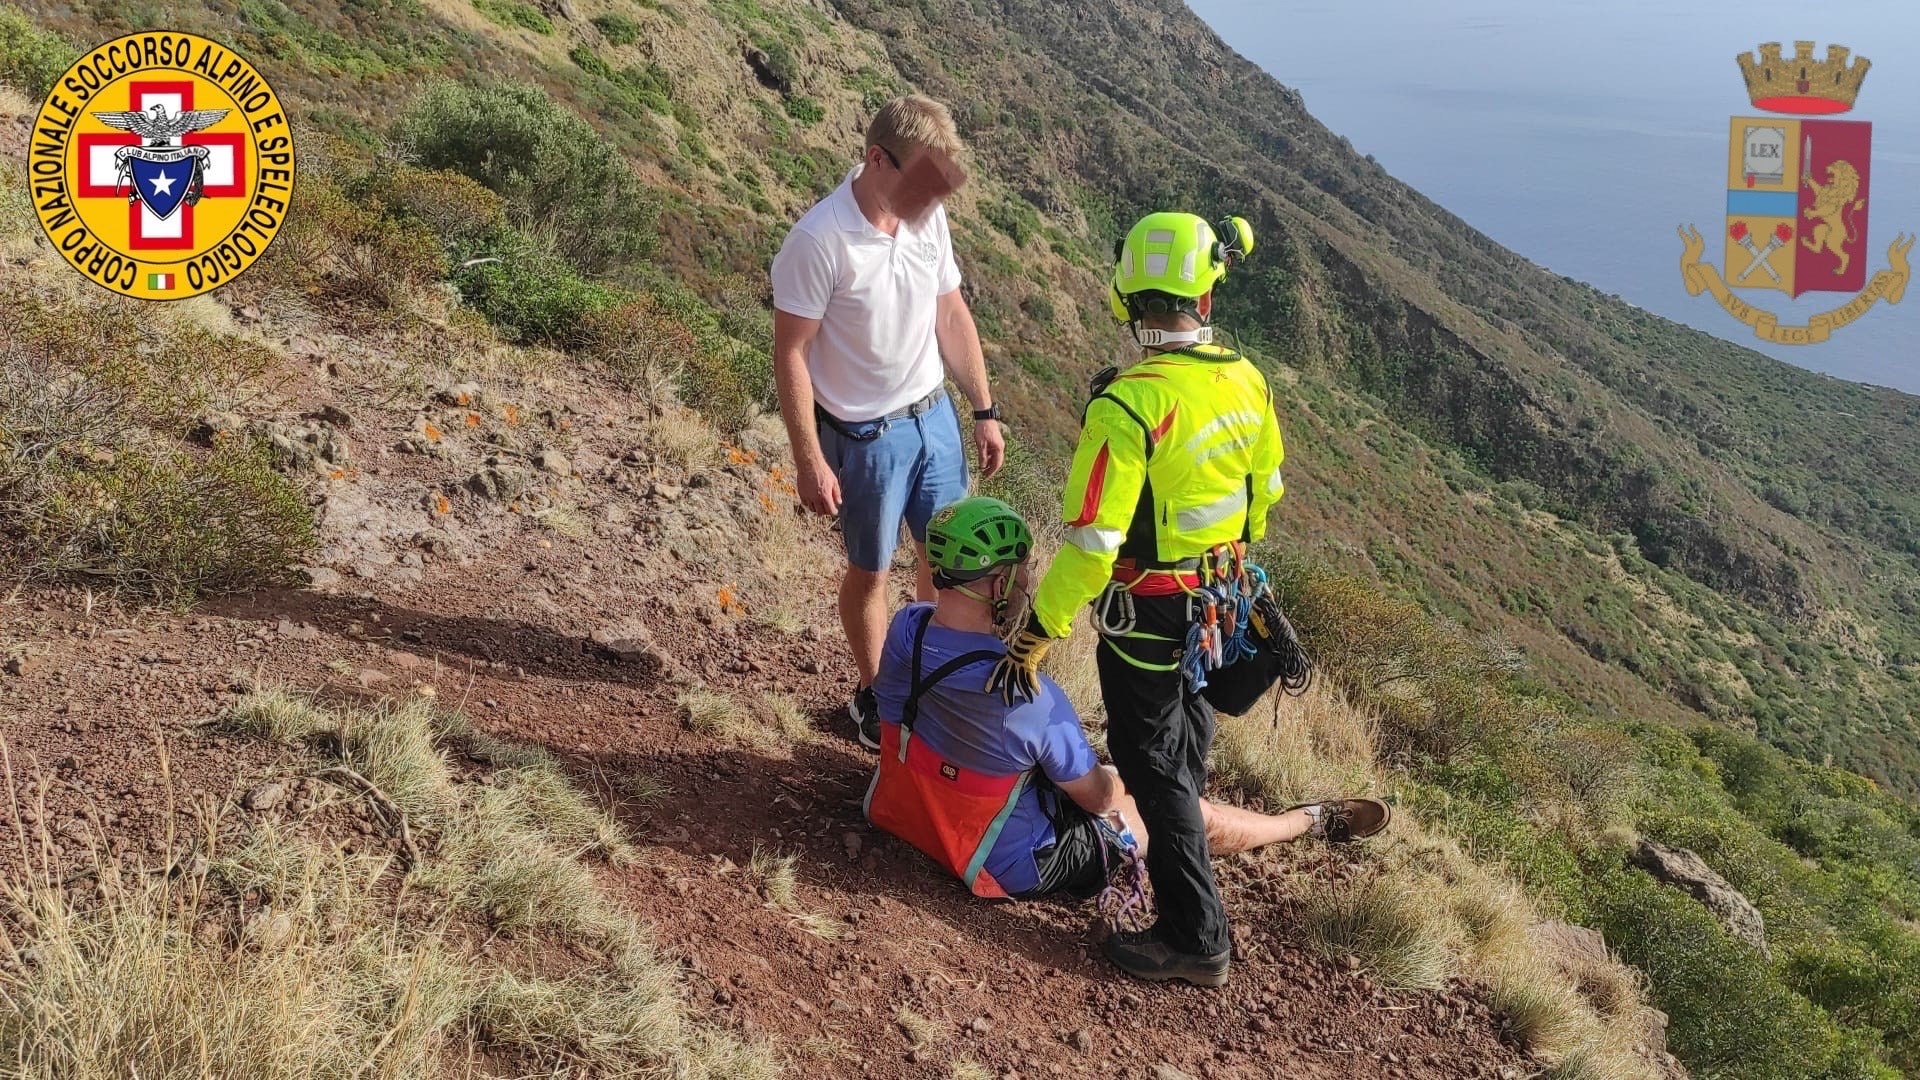 Malore durante una escursione, salvato un turista 65enne collassato – Le FOTO